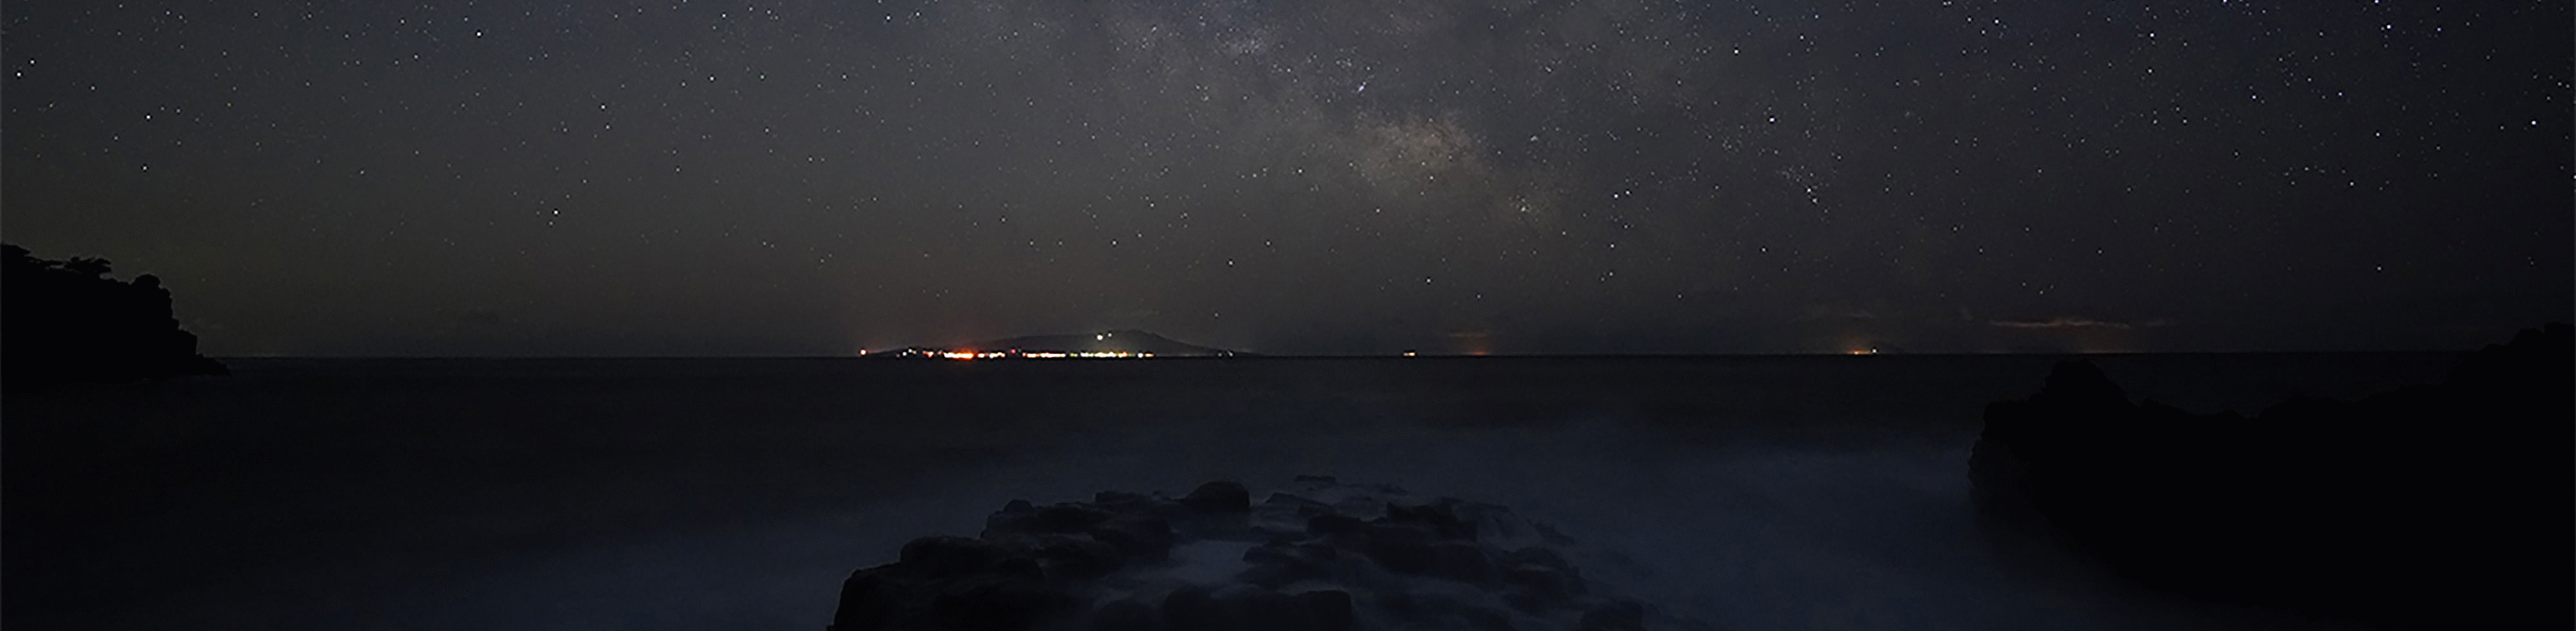 Zdjęcie astronomiczne Drogi Mlecznej nad morzem